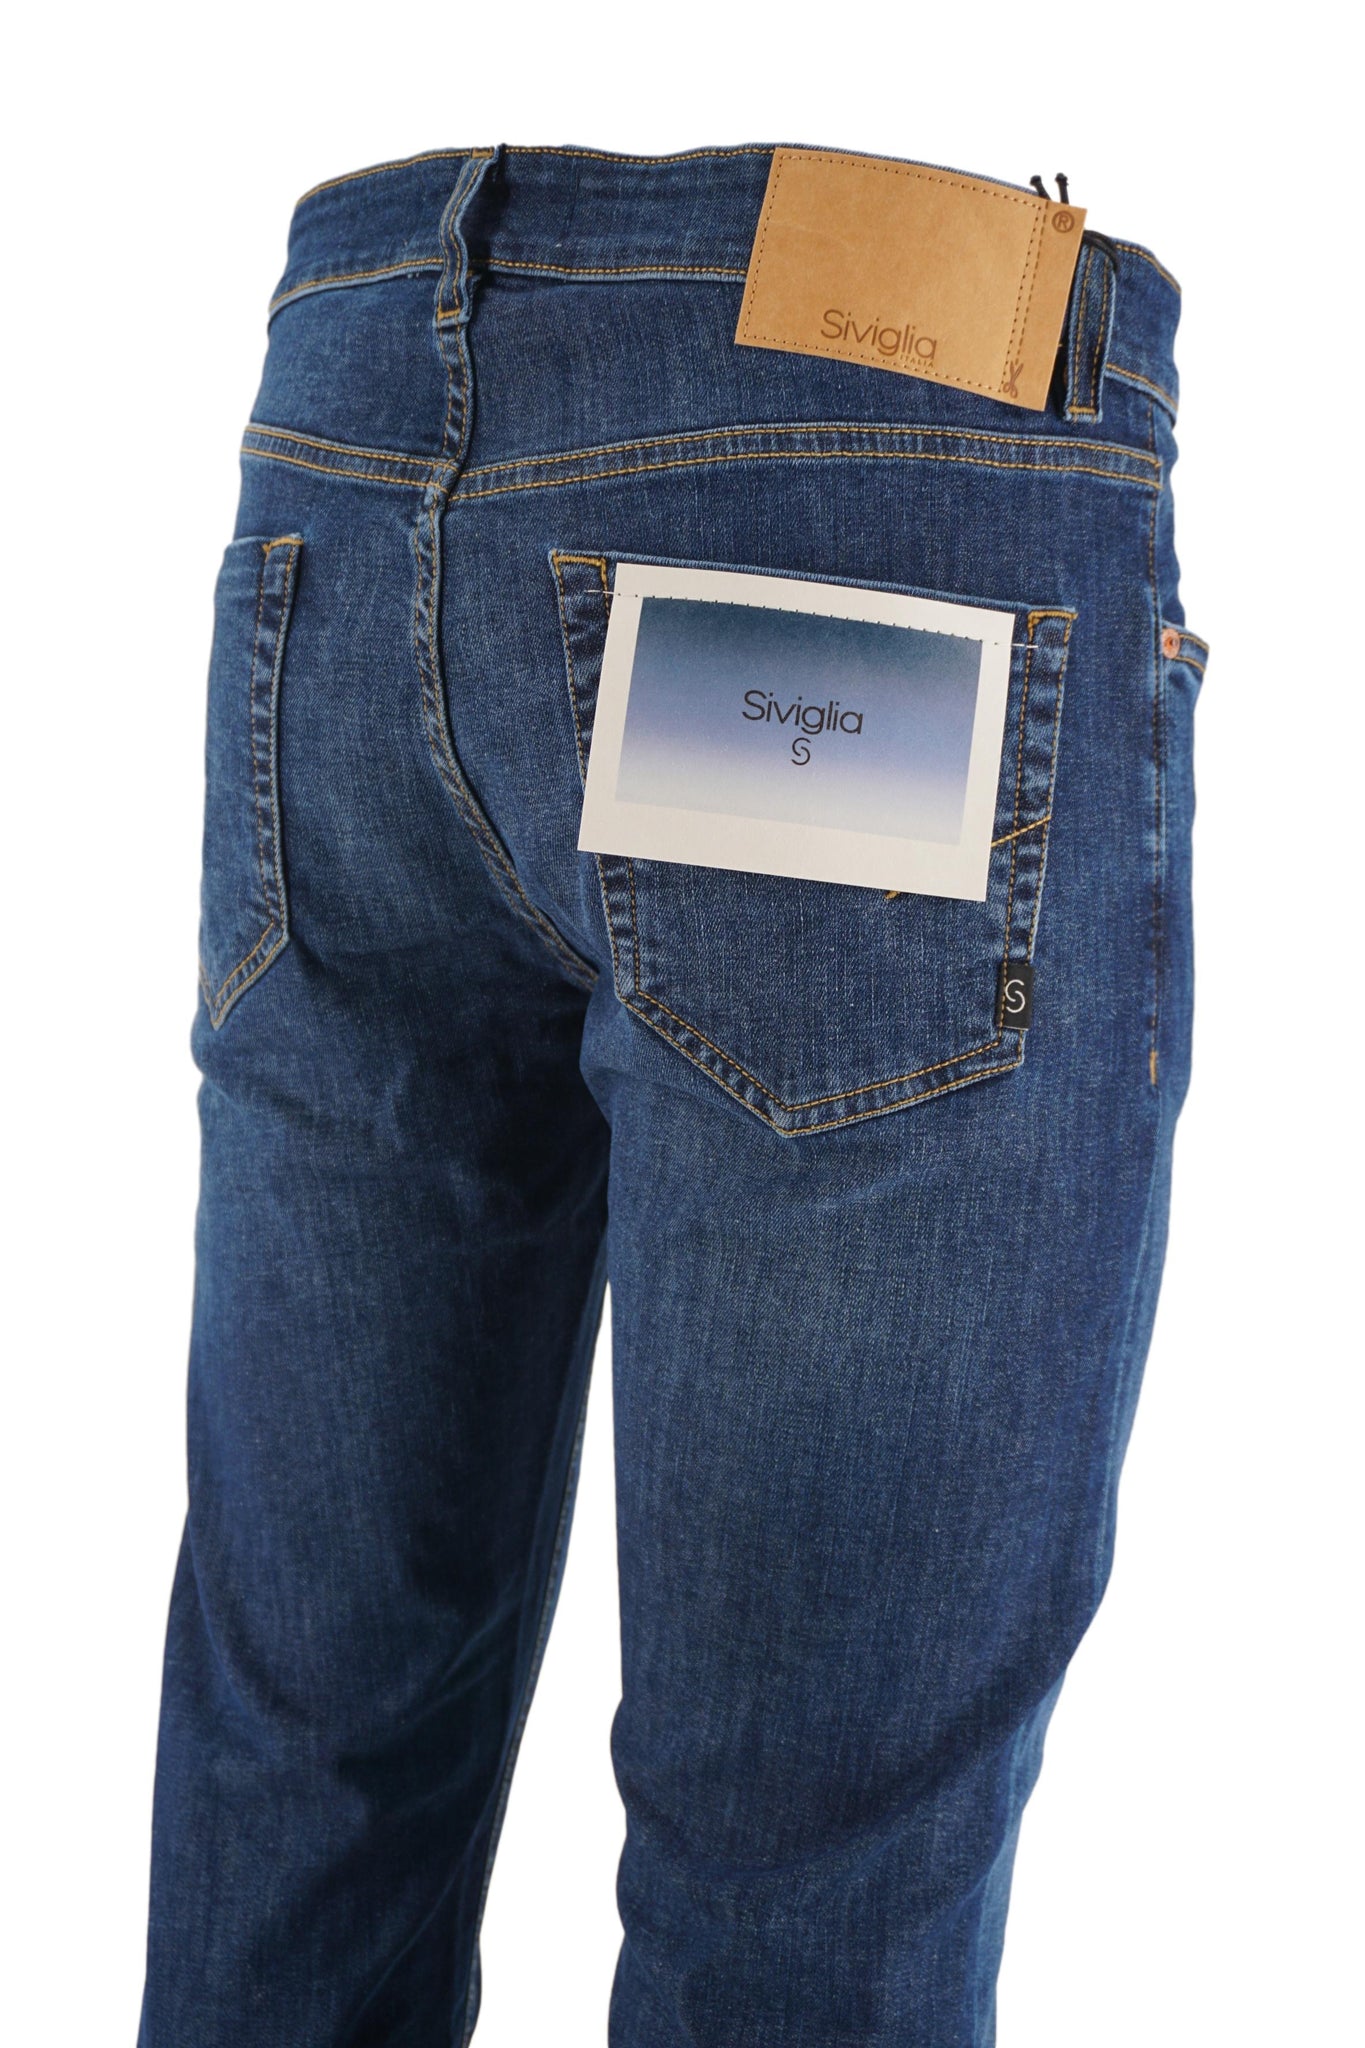 Jeans Cinque Tasche Modello Palazzo / Jeans - Ideal Moda